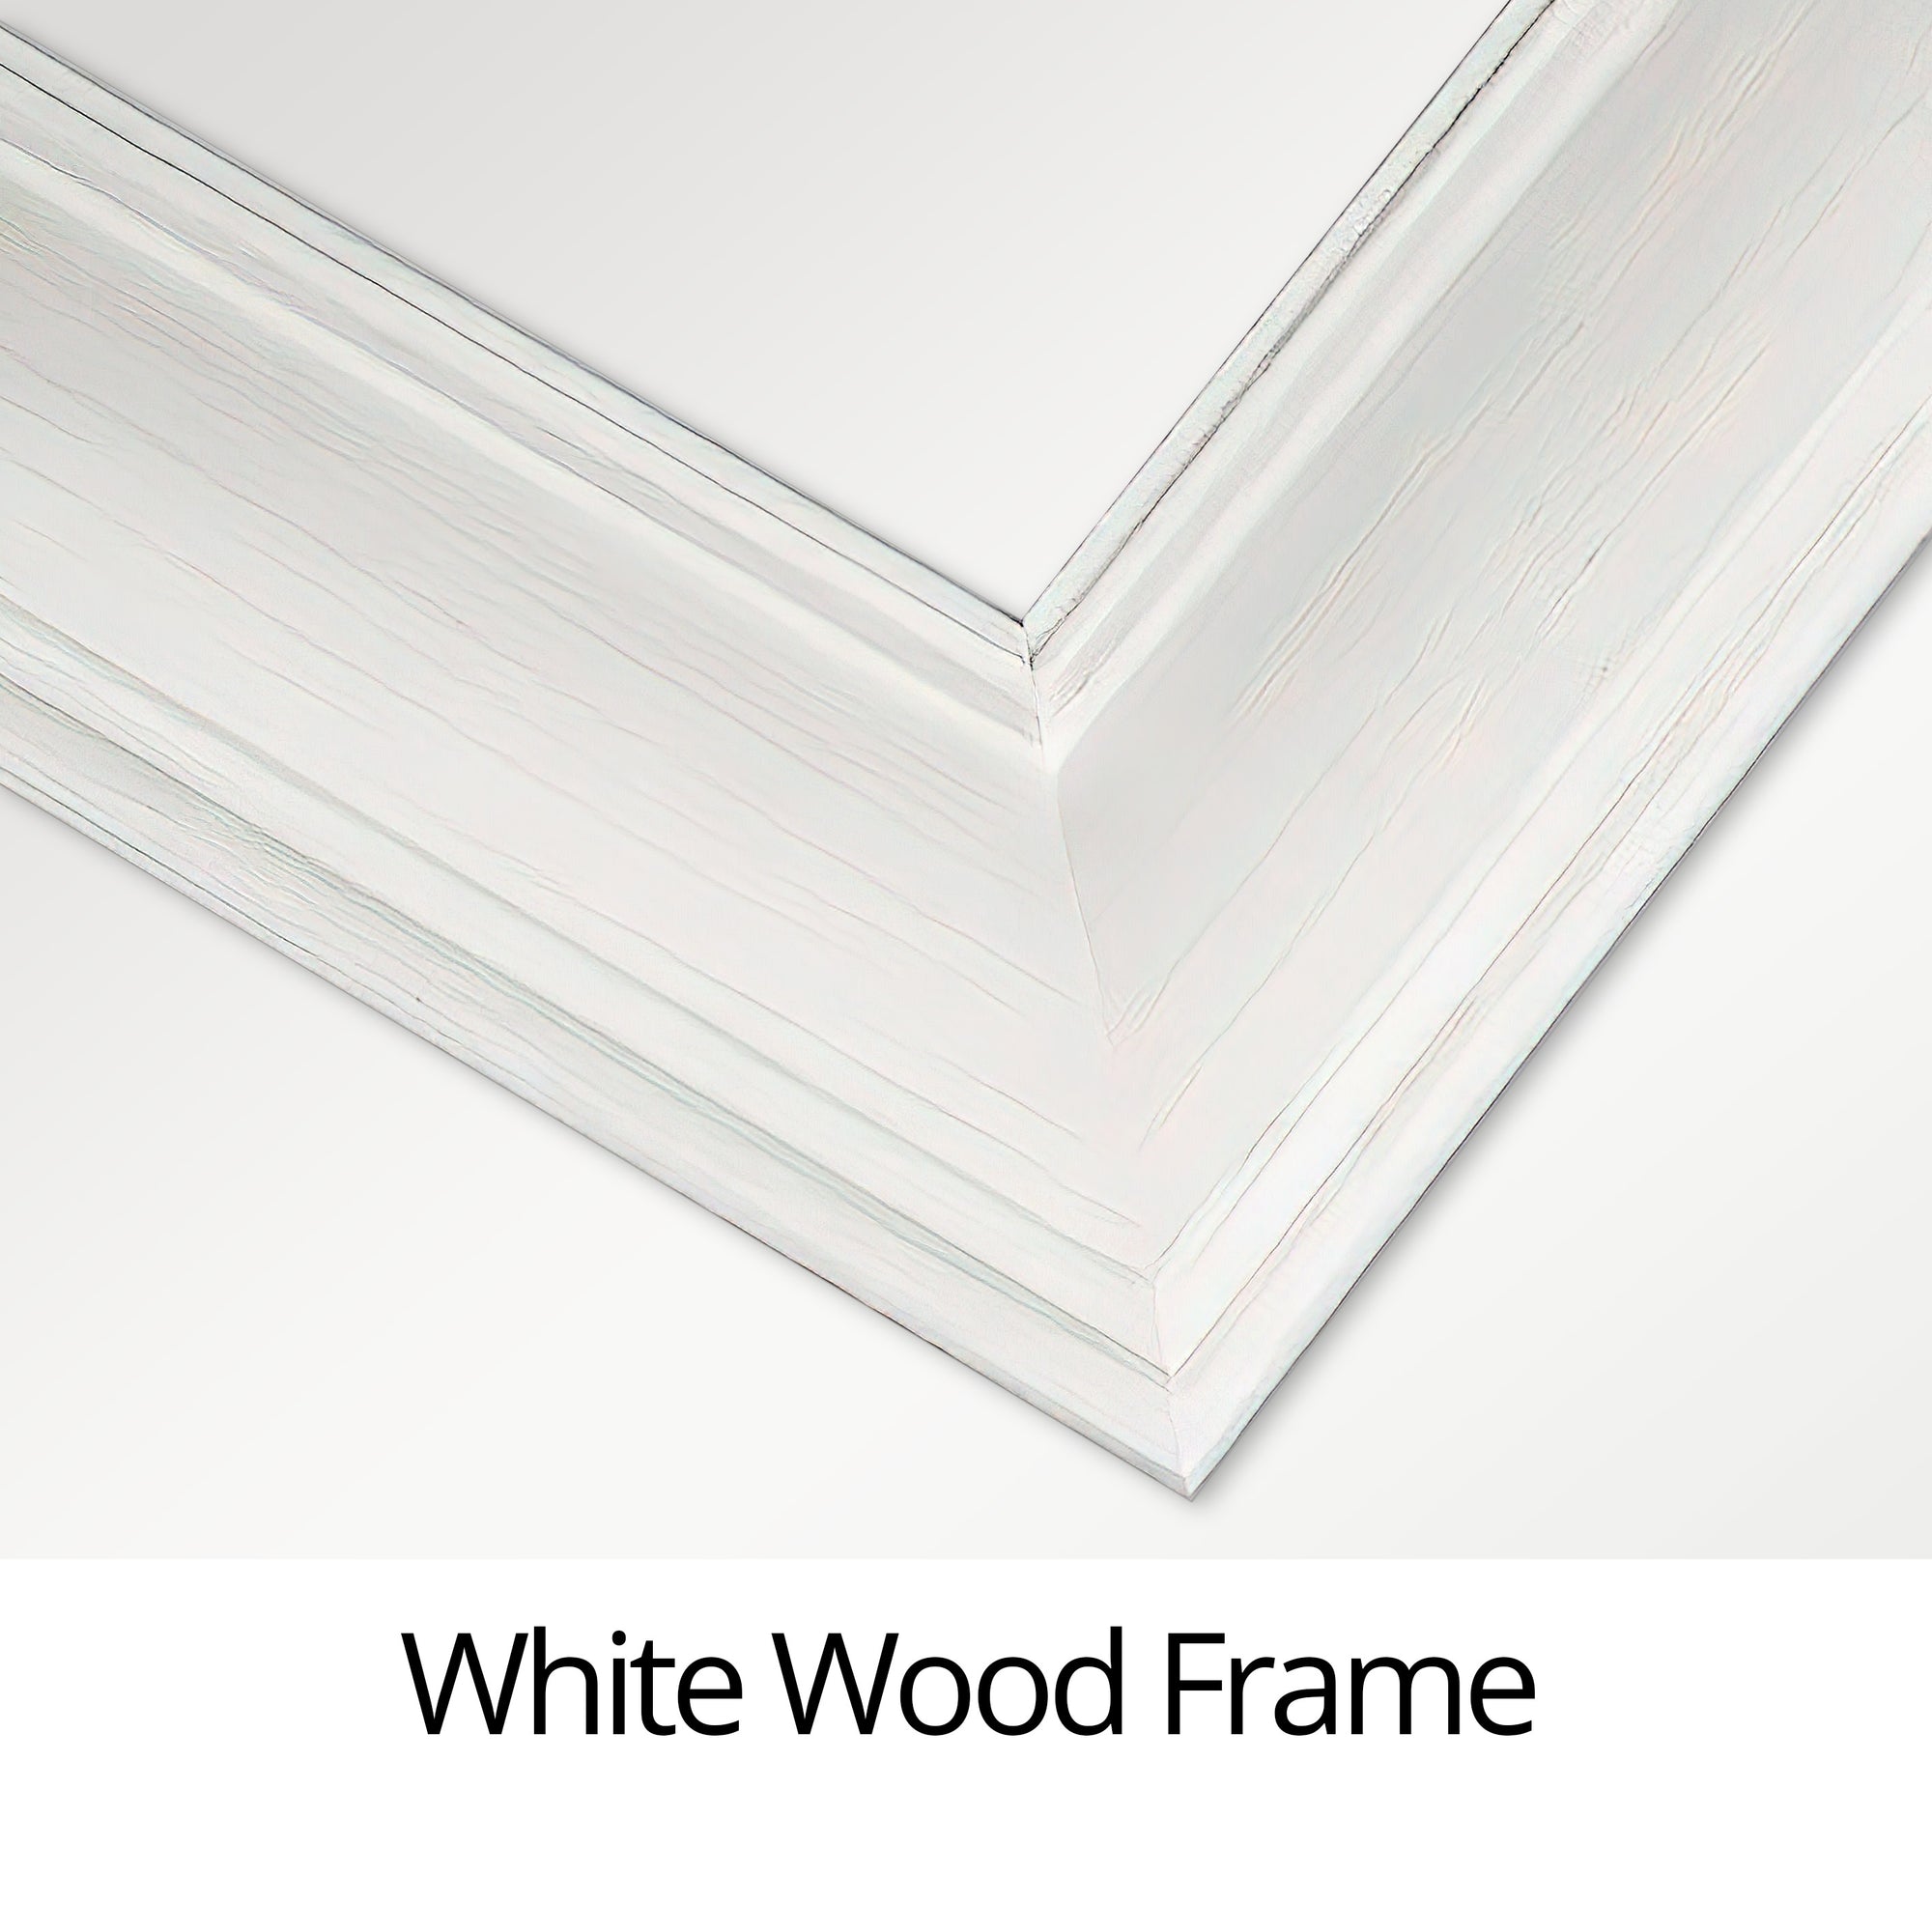 White frame